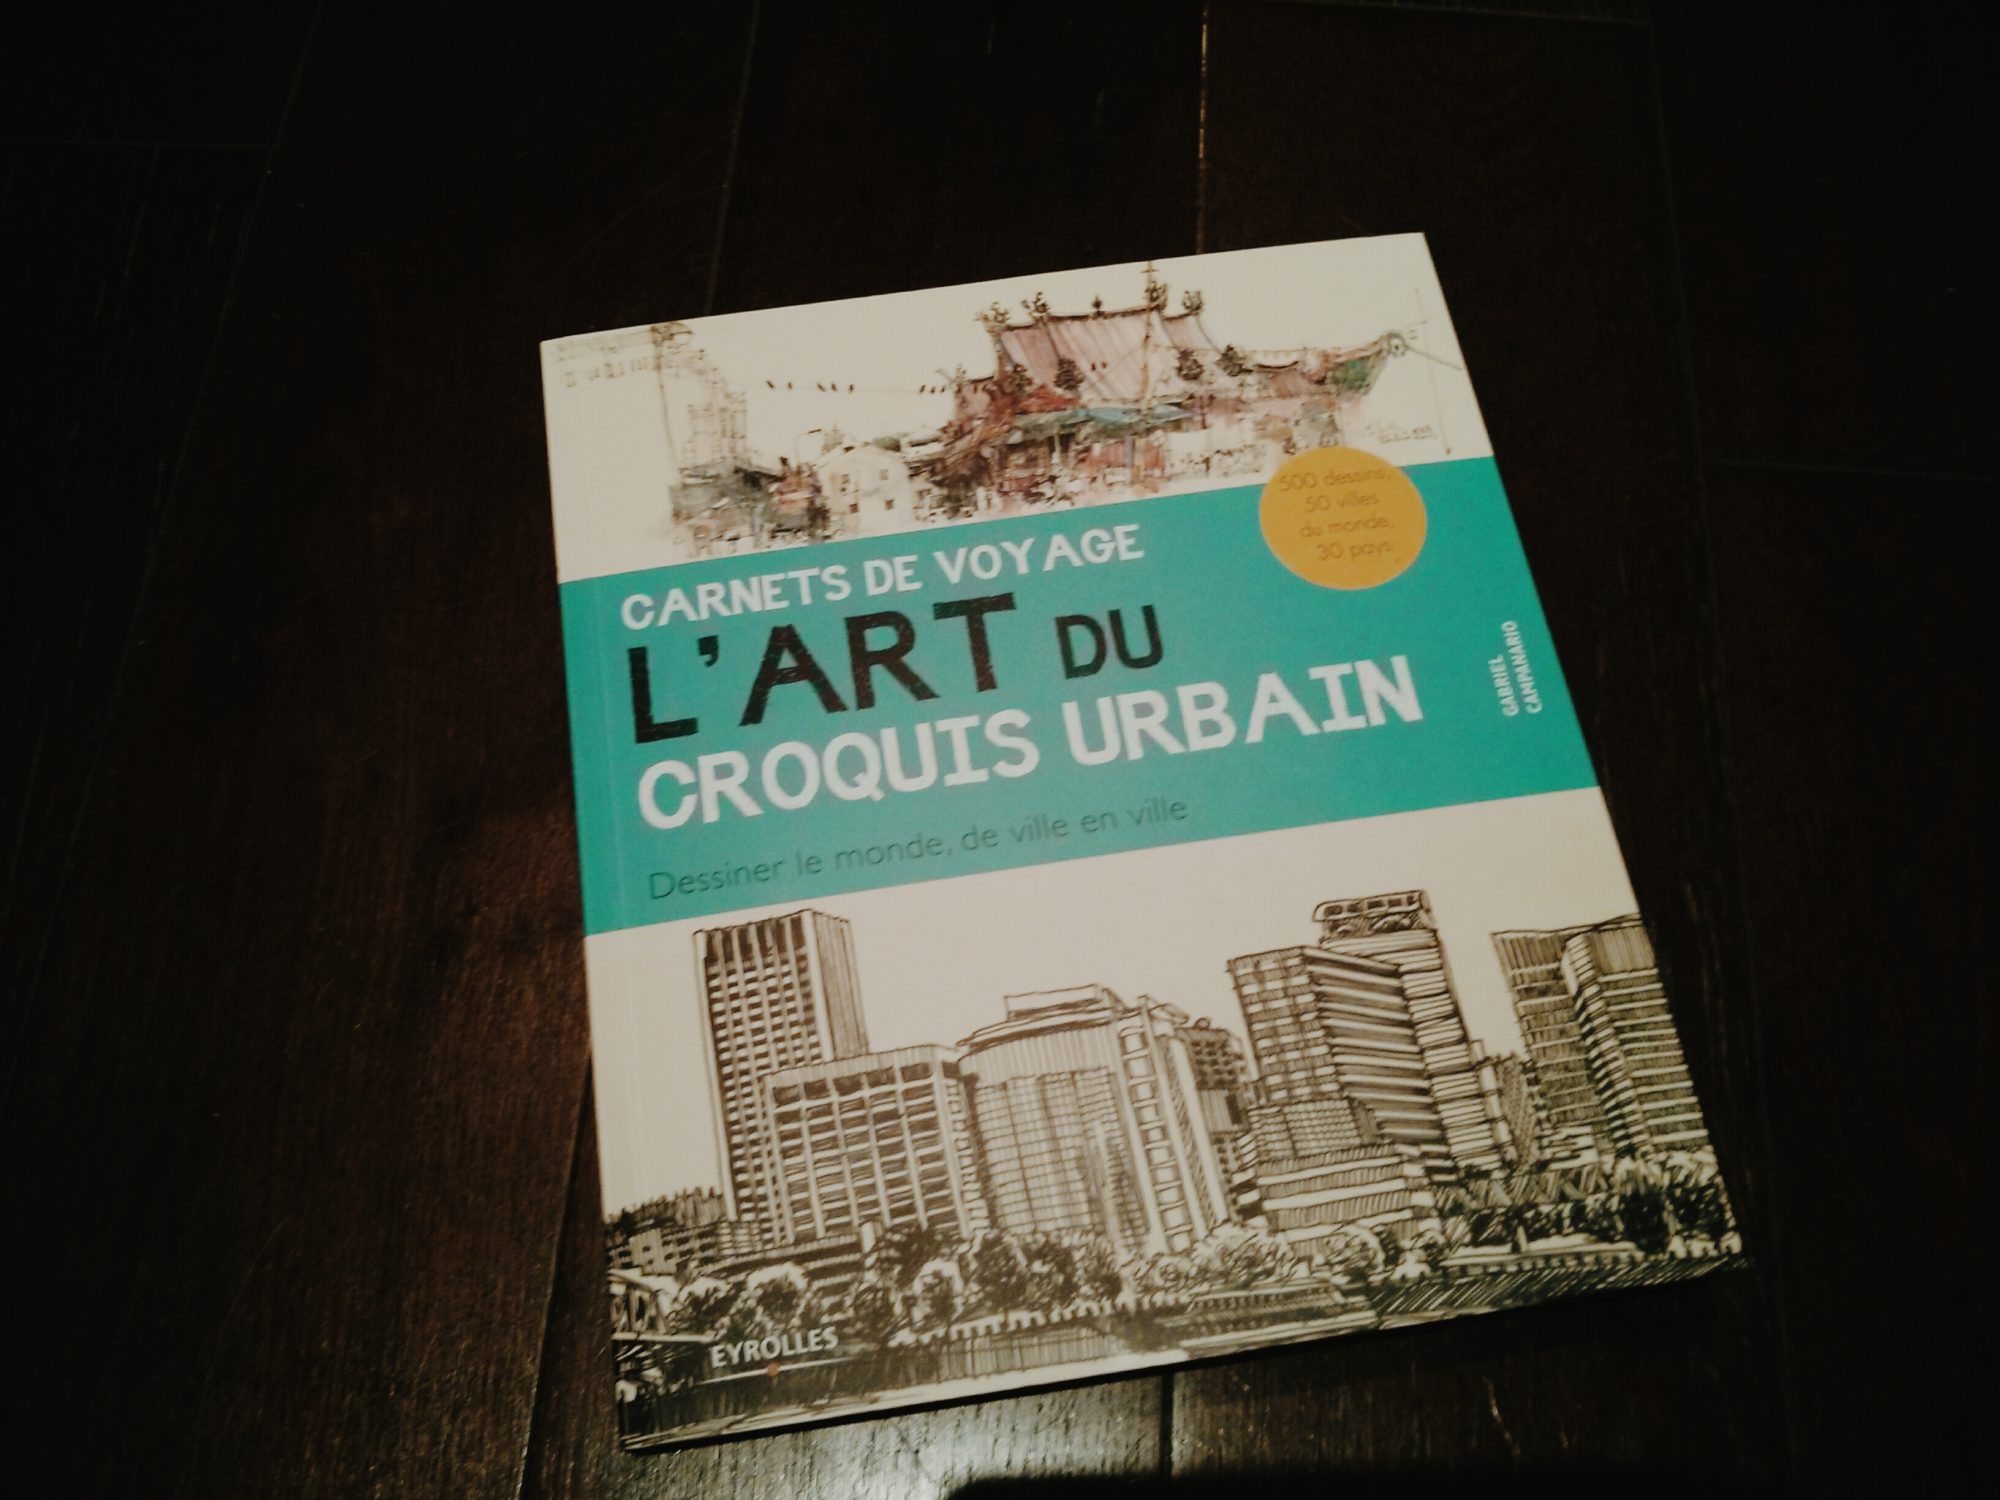 L’art du croquis urbain, le livre pour lequel nous allons tous céder